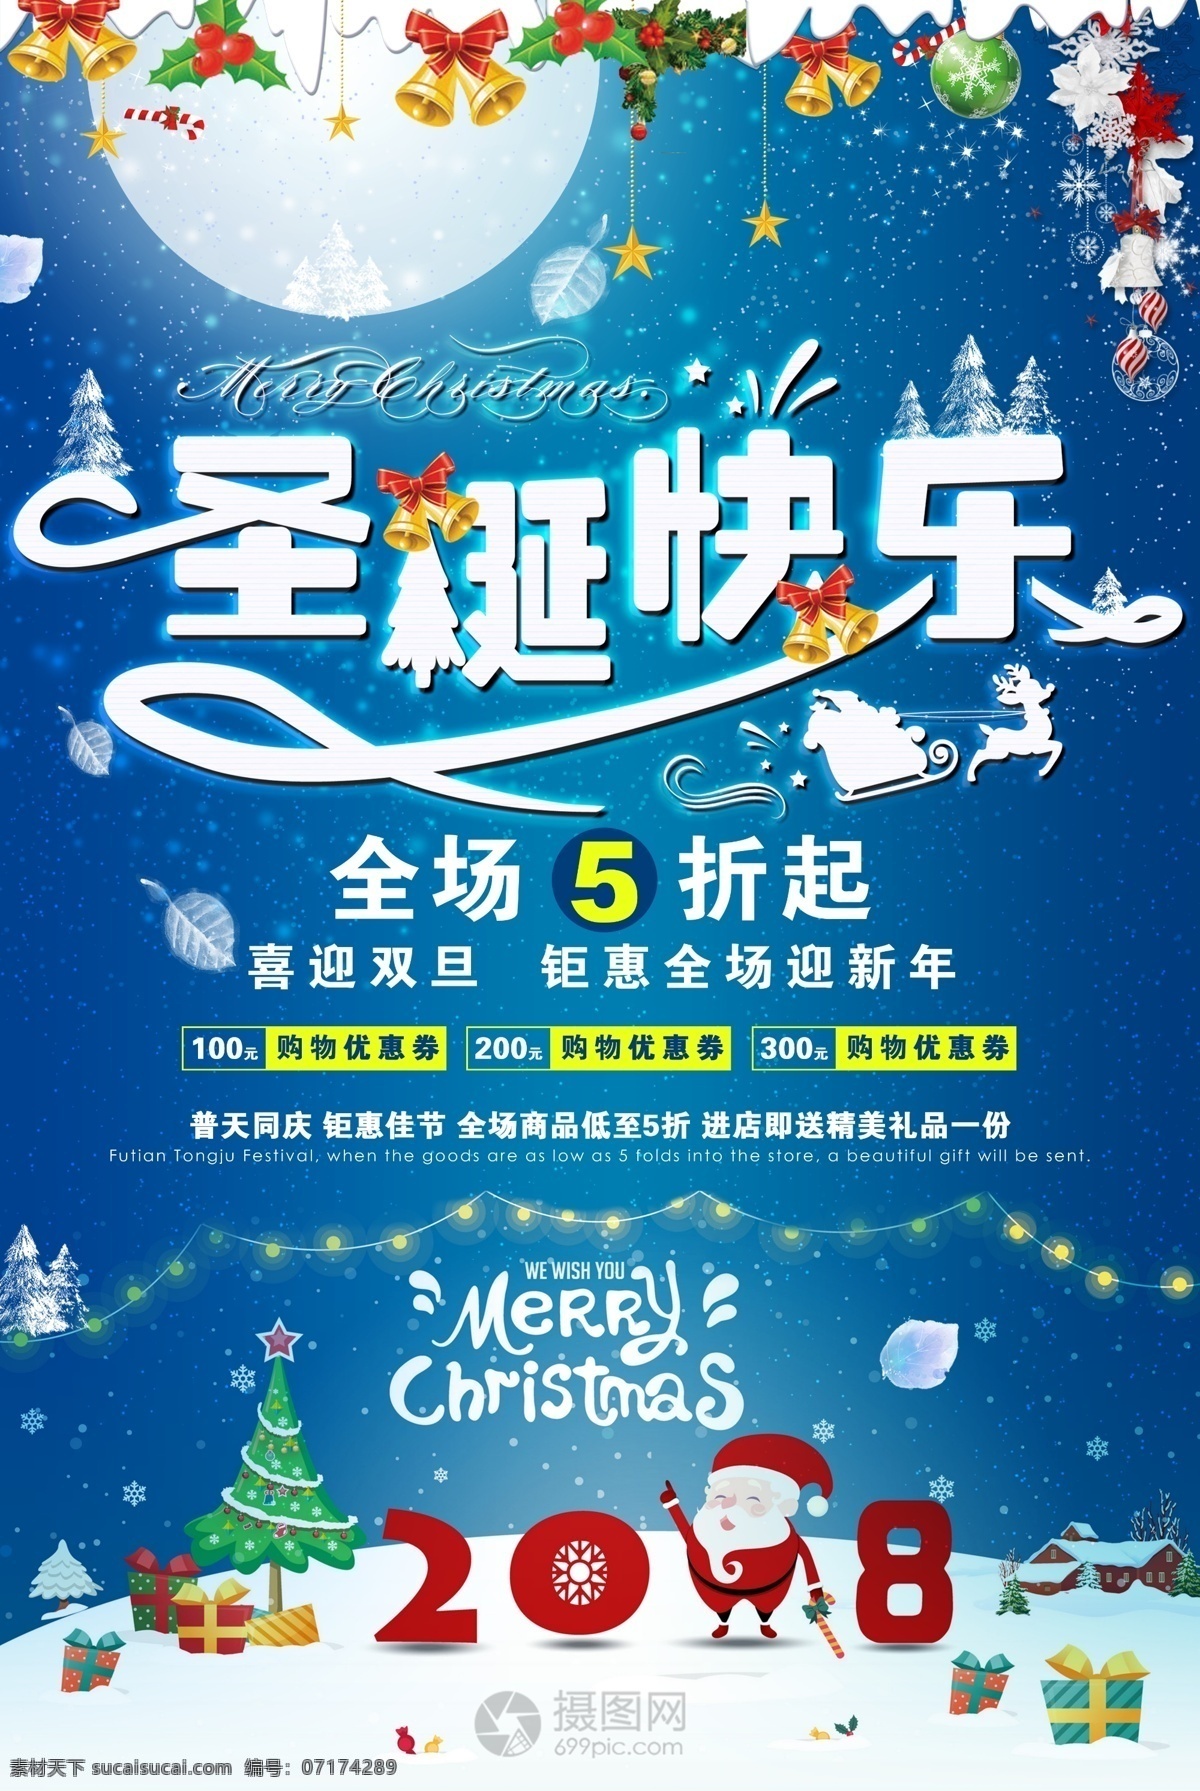 圣诞快乐 促销 圣诞 圣诞节 圣诞促销 打折 满减 蓝色 唯美 圣诞树 圣诞老人 雪景 插画 海报